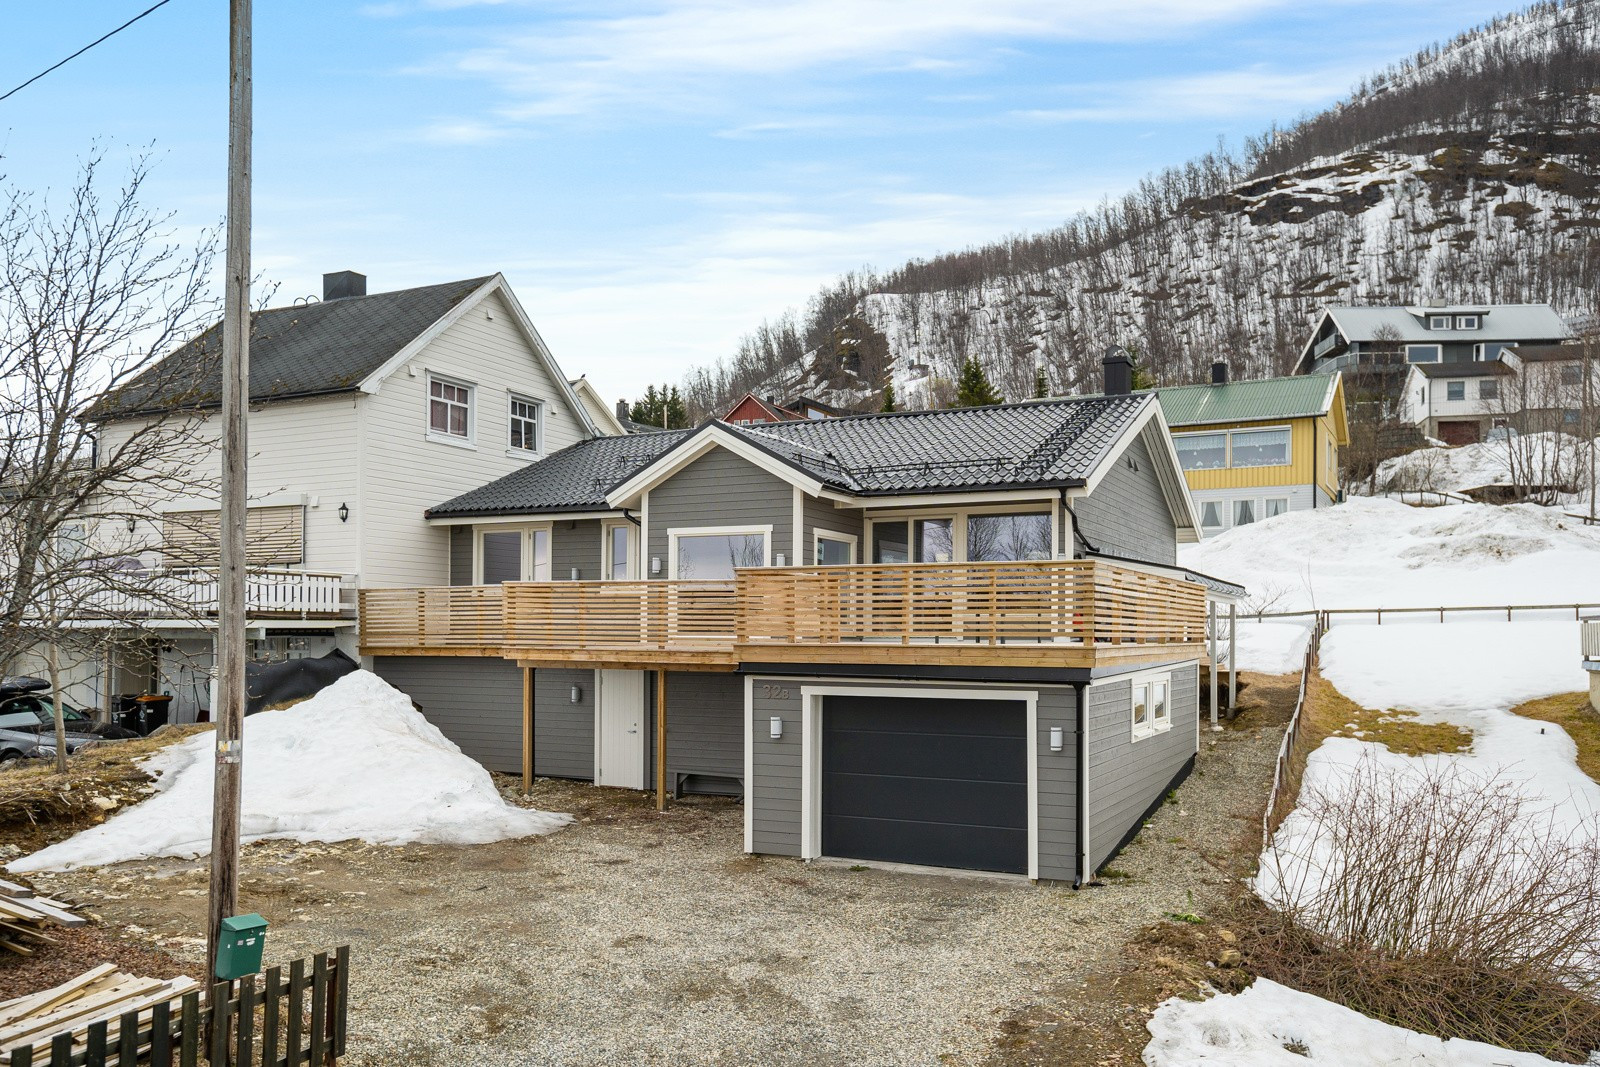 Nyrenovert vertikaldelt bolig med stor terrasse sentralt beliggende i Tromsdalen